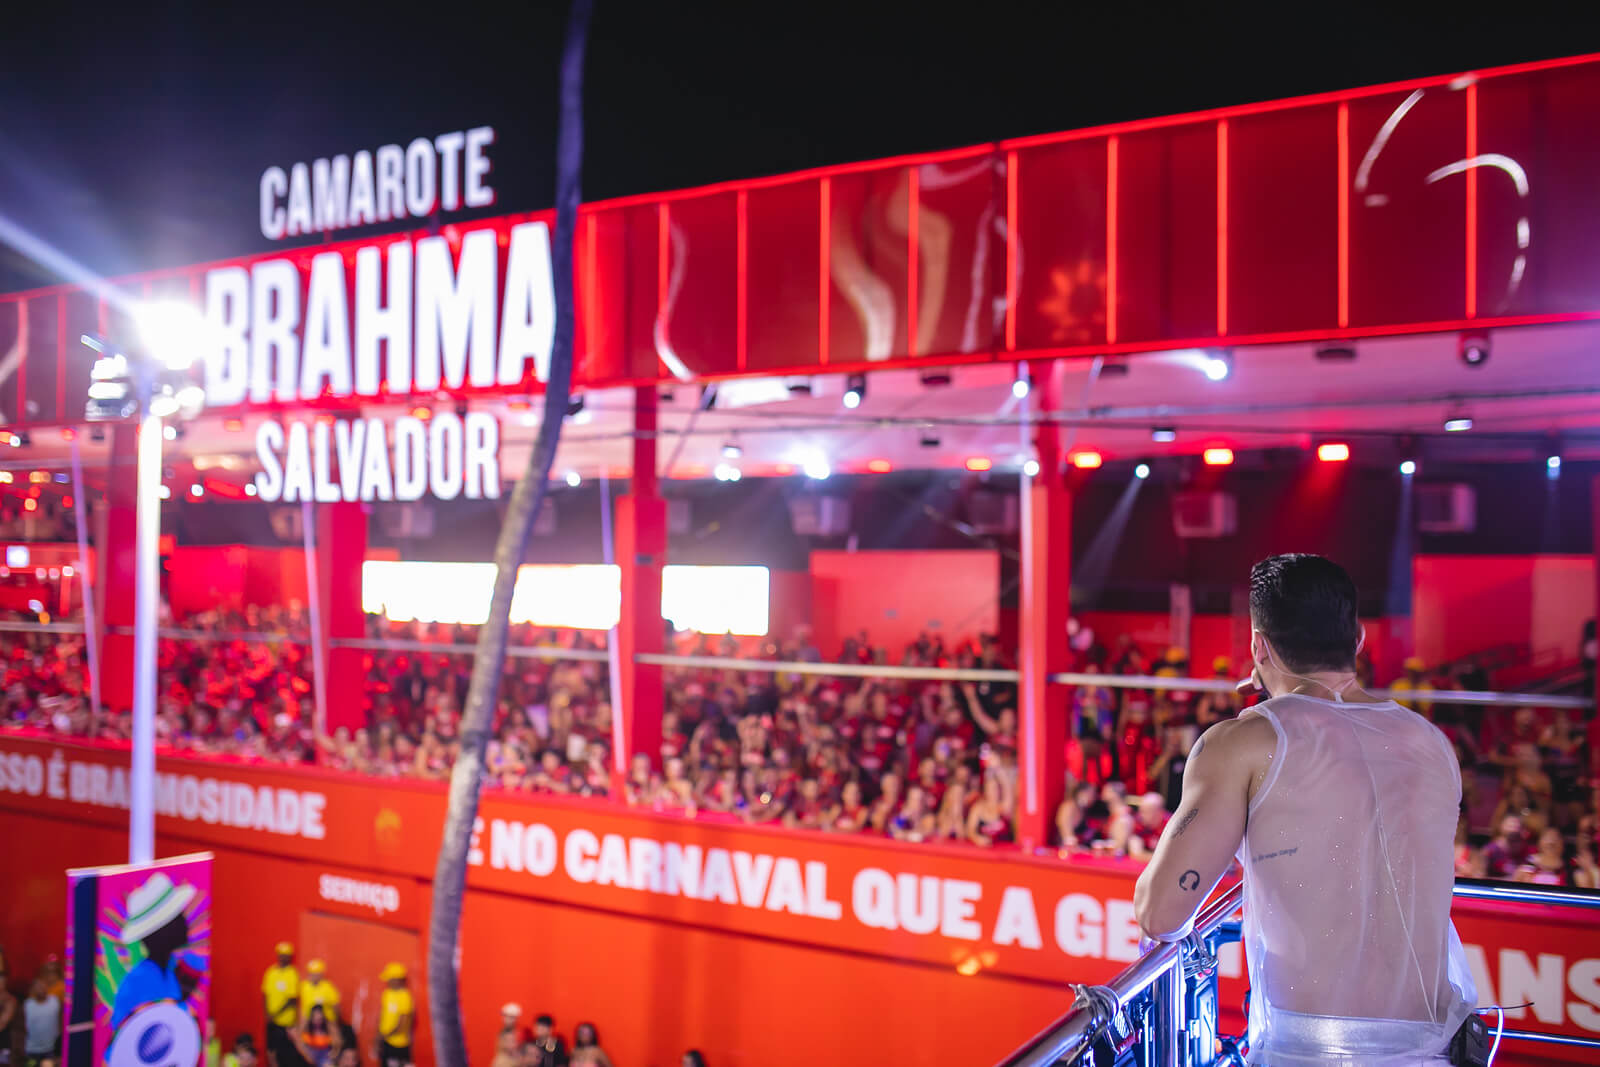 Papazoni arrasta multidão com hit “Eu Tive Um Amor”, no circuito Barra Ondina 5